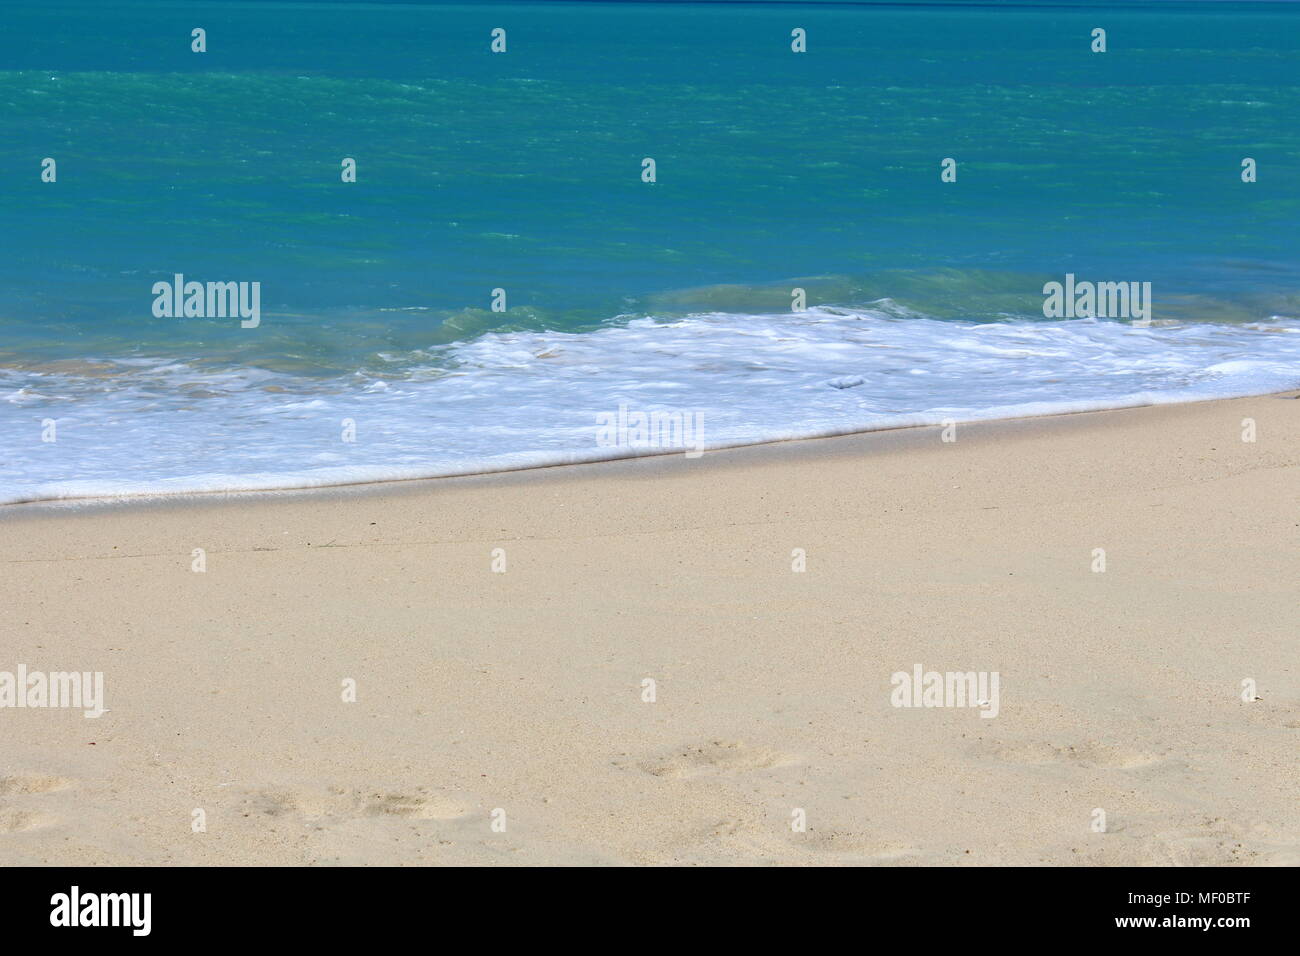 Un typique plage des Caraïbes à Antigua, la mer turquoise et sable blanc. Banque D'Images